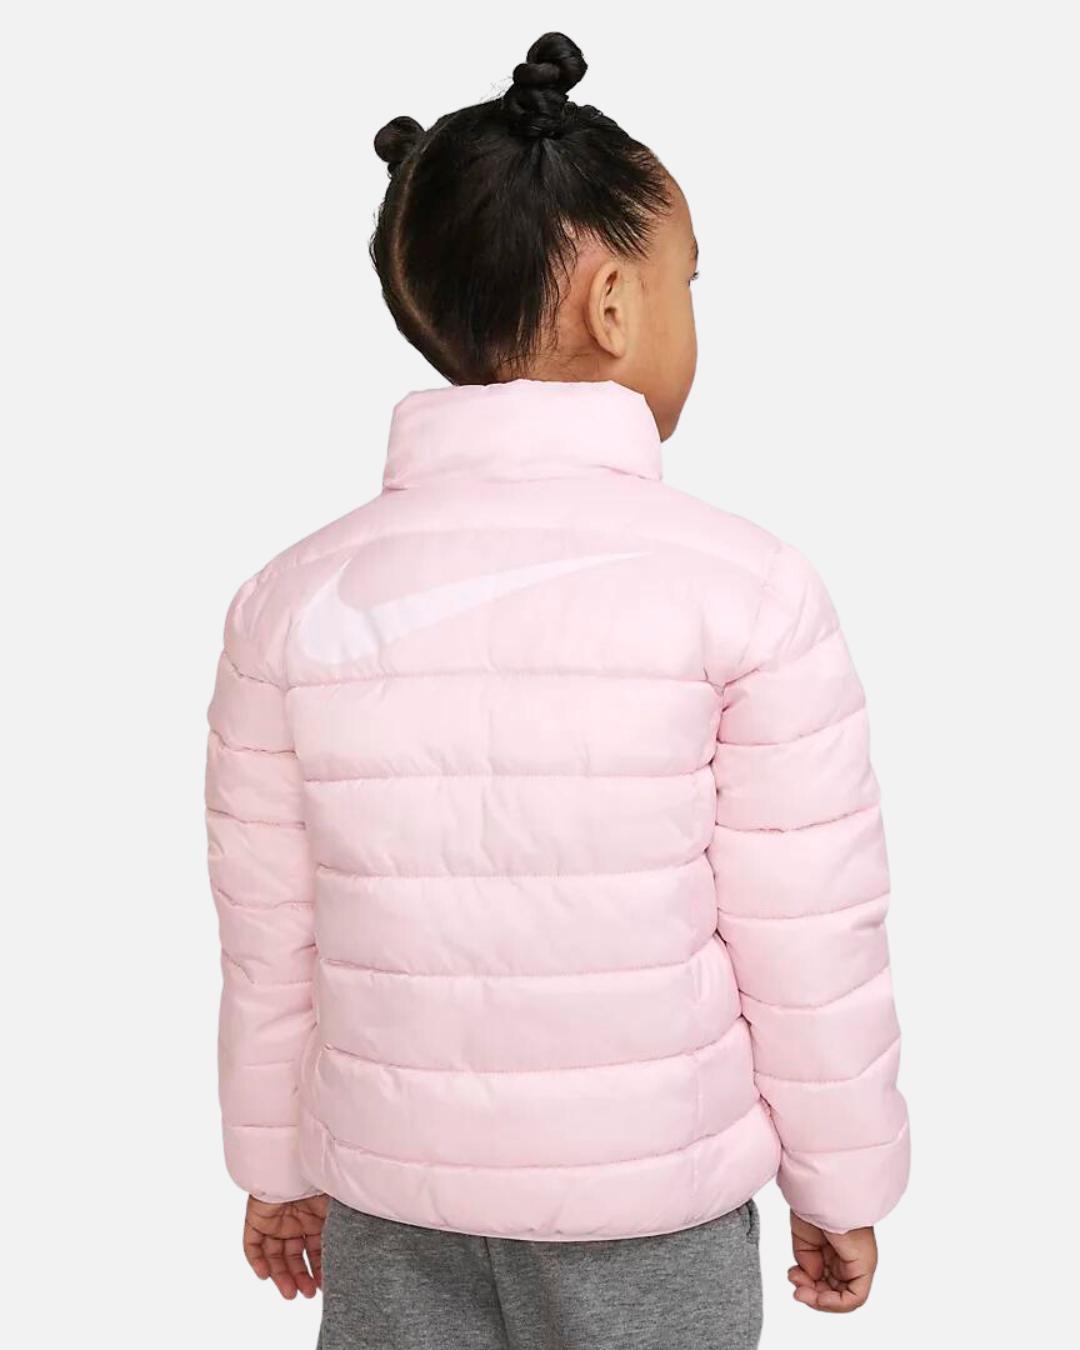 Nike Junior Girls' Jacket - Pink